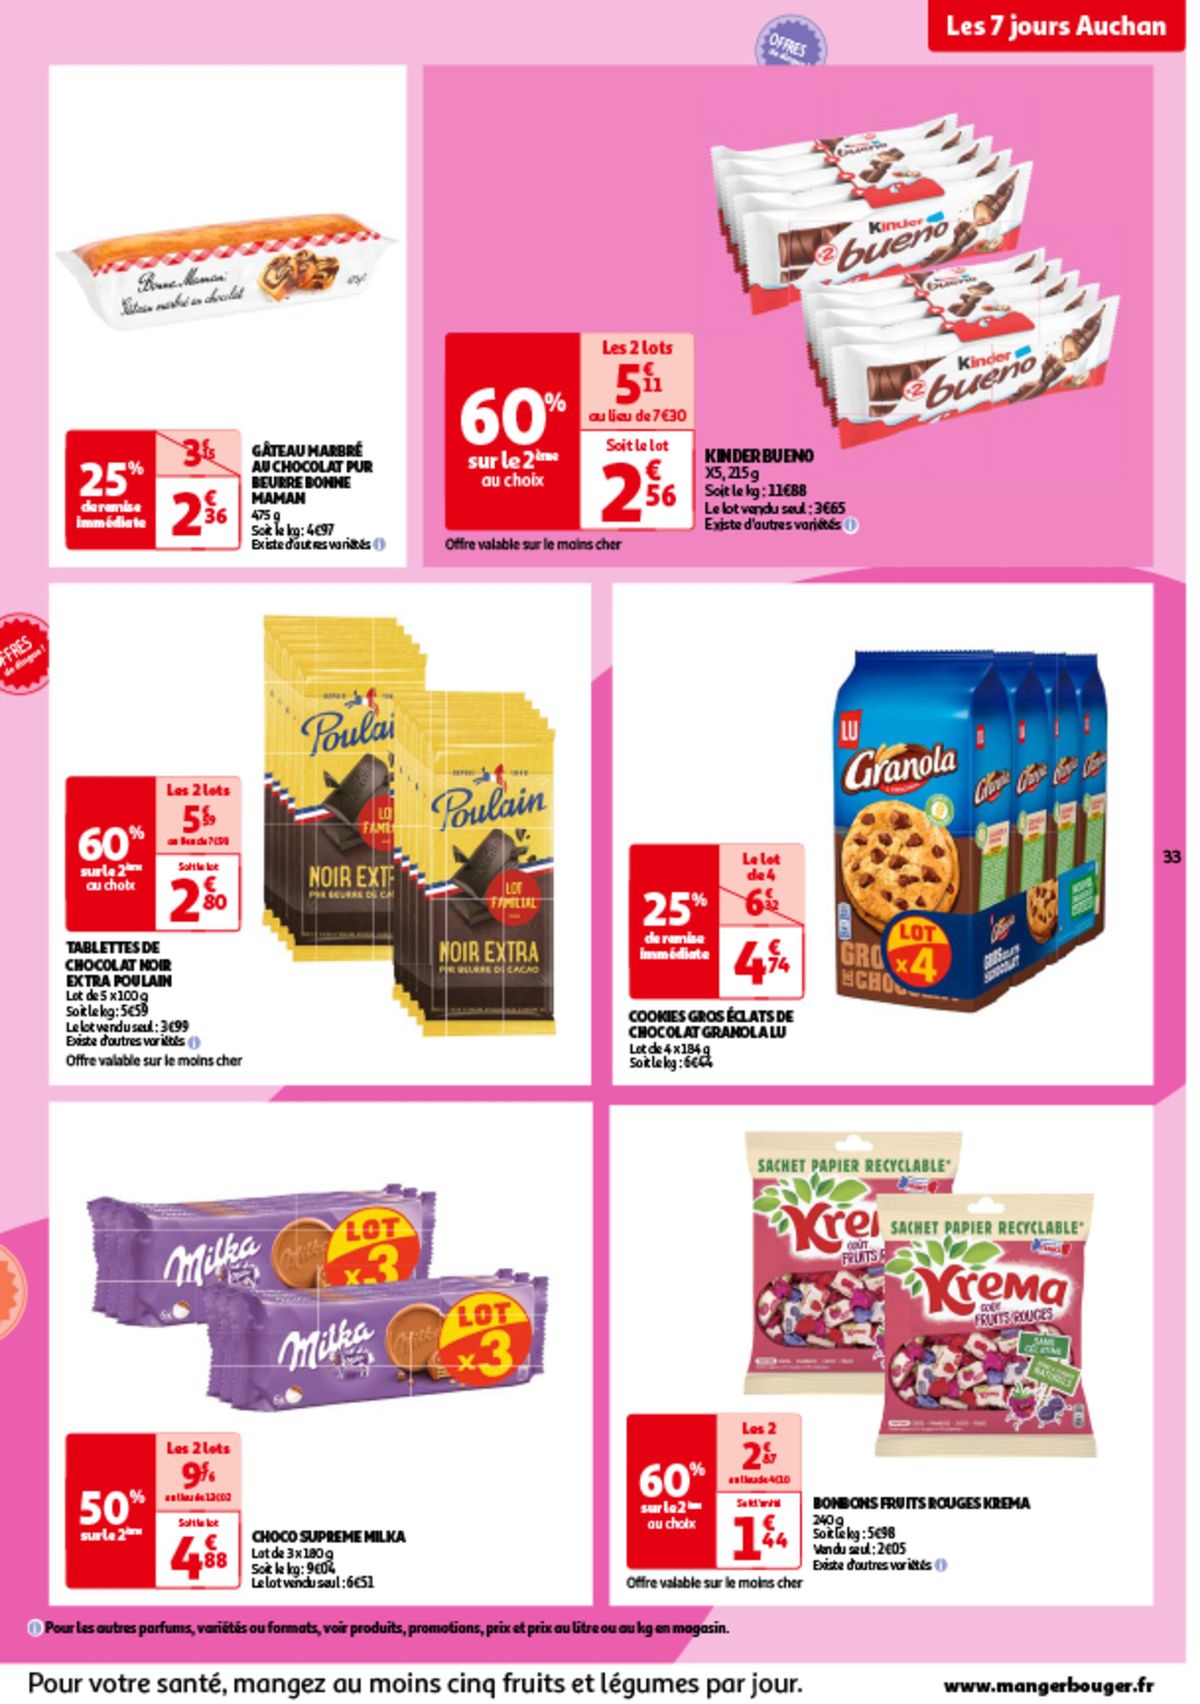 Catalogue Les 7 jours Auchan, c'est maintenant !, page 00033